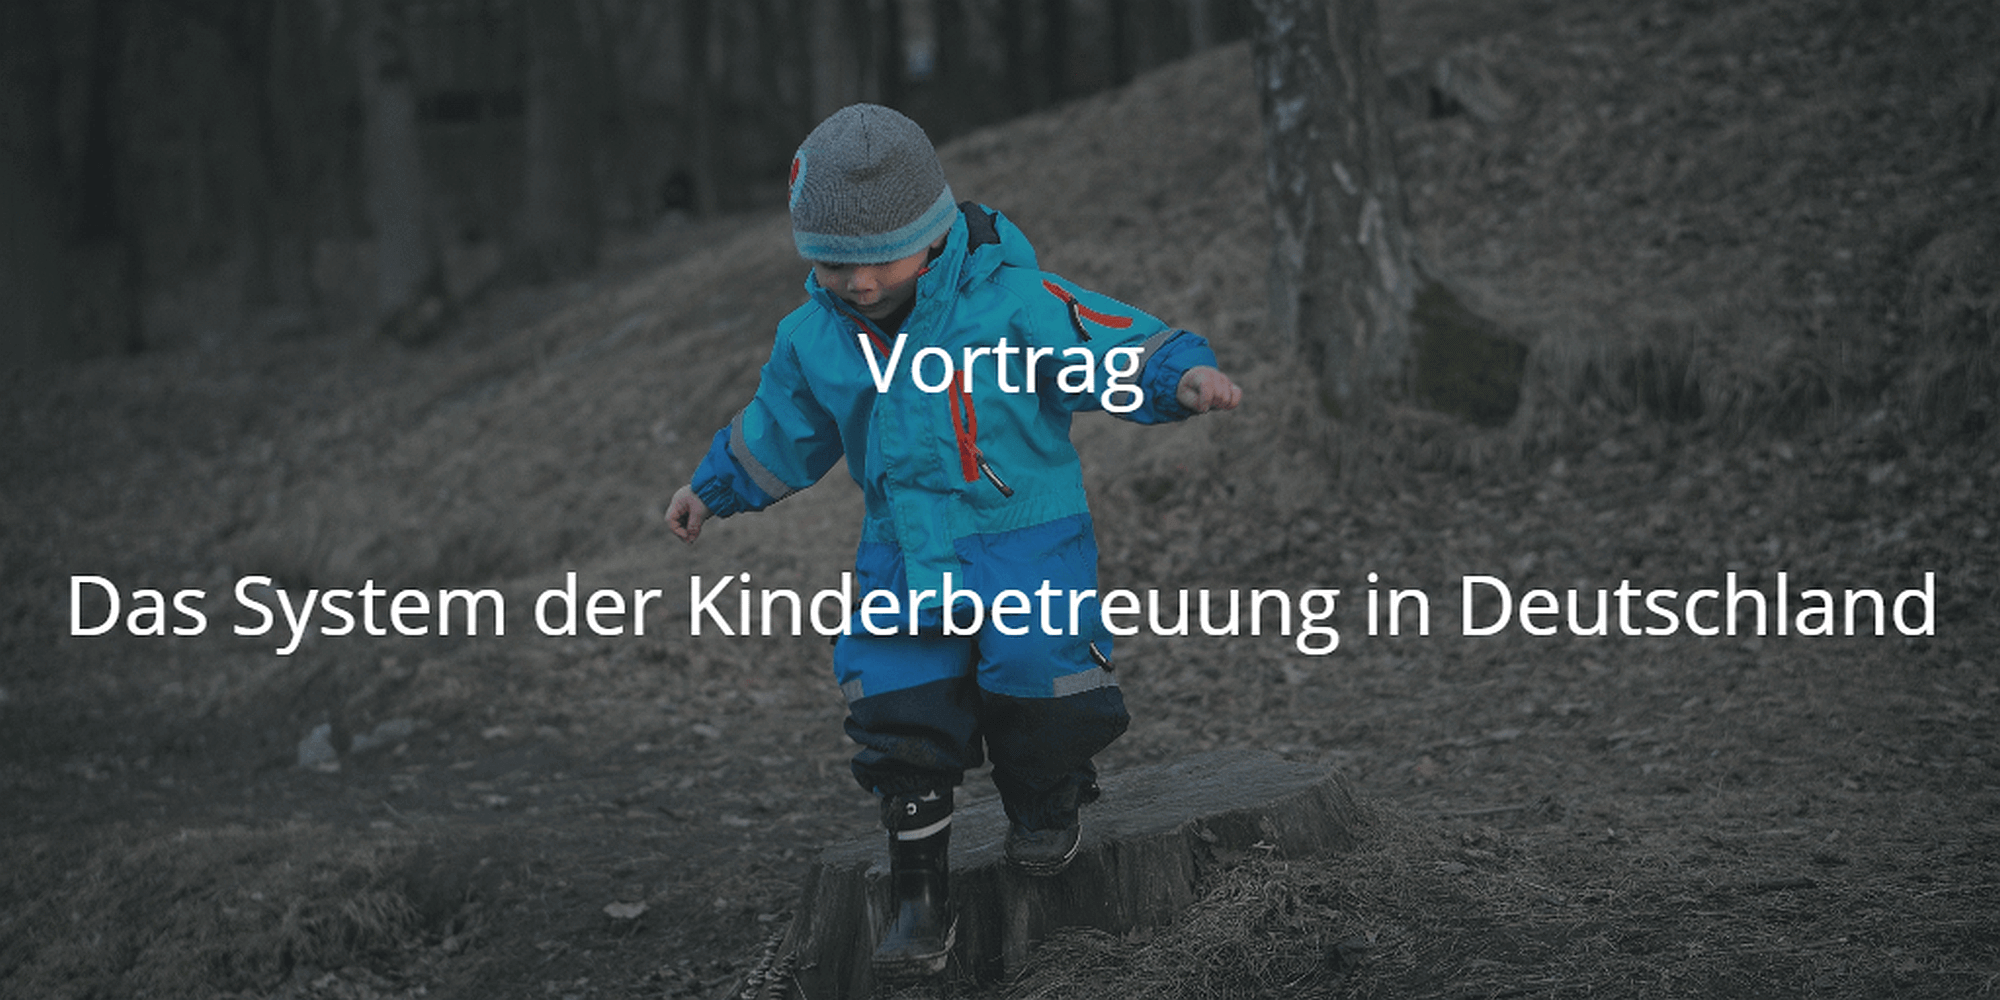 Vortrag Das System der Kinderbetreuung in Deutschland